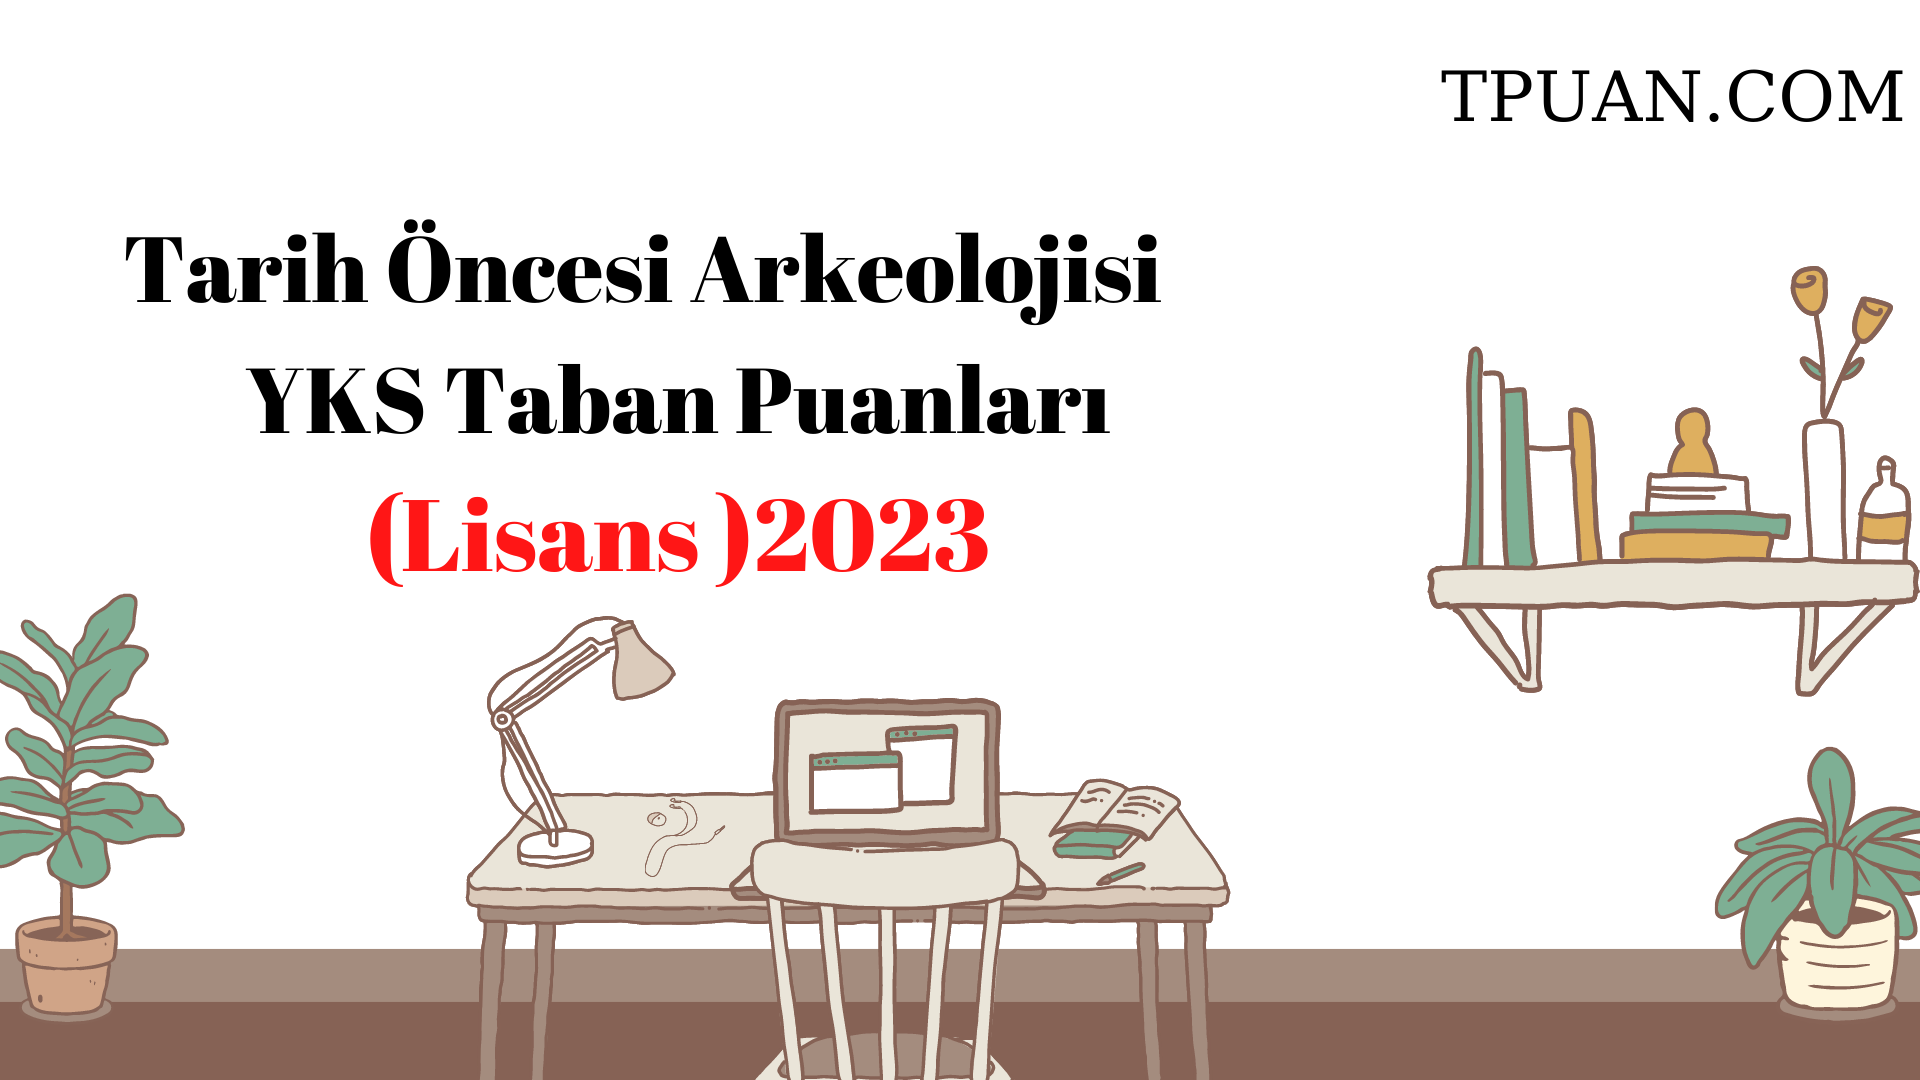  Tarih Öncesi Arkeolojisi Bölümü YKS Taban Puanları (4 Yıllık) 2023